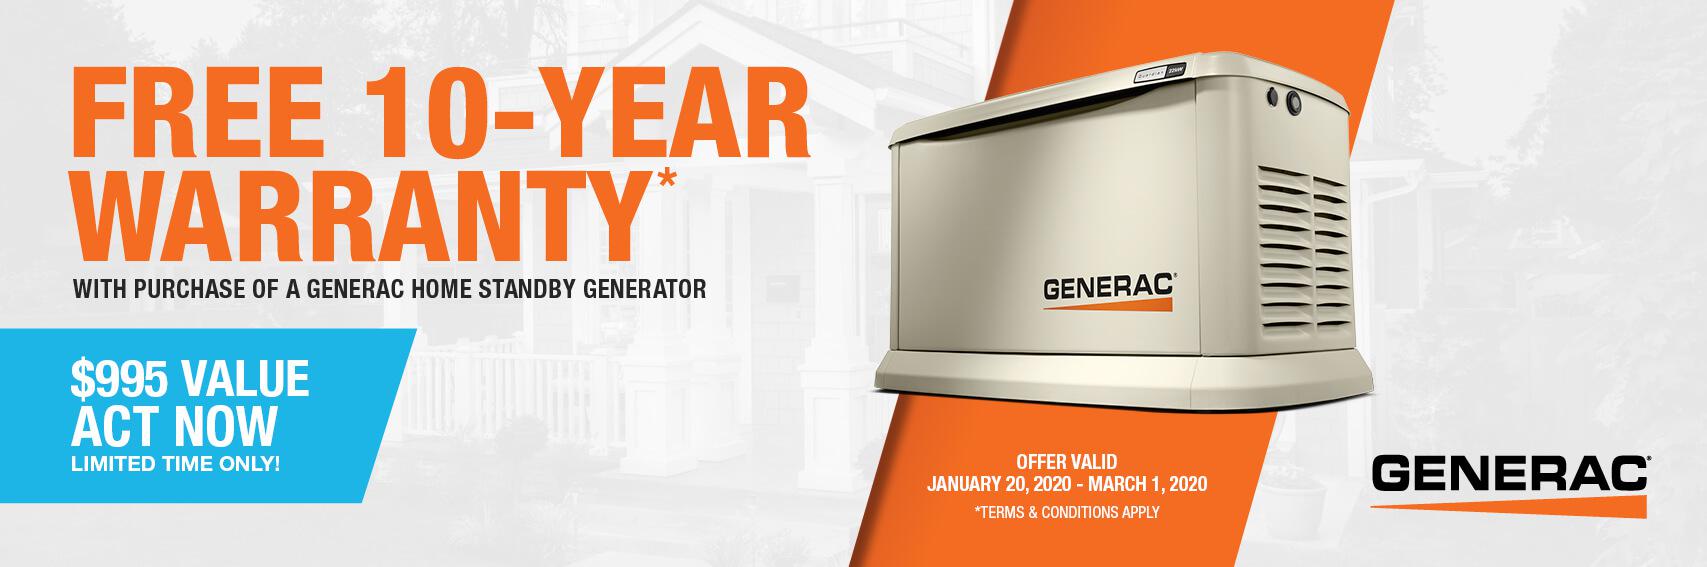 Homestandby Generator Deal | Warranty Offer | Generac Dealer | Woodbine, NJ